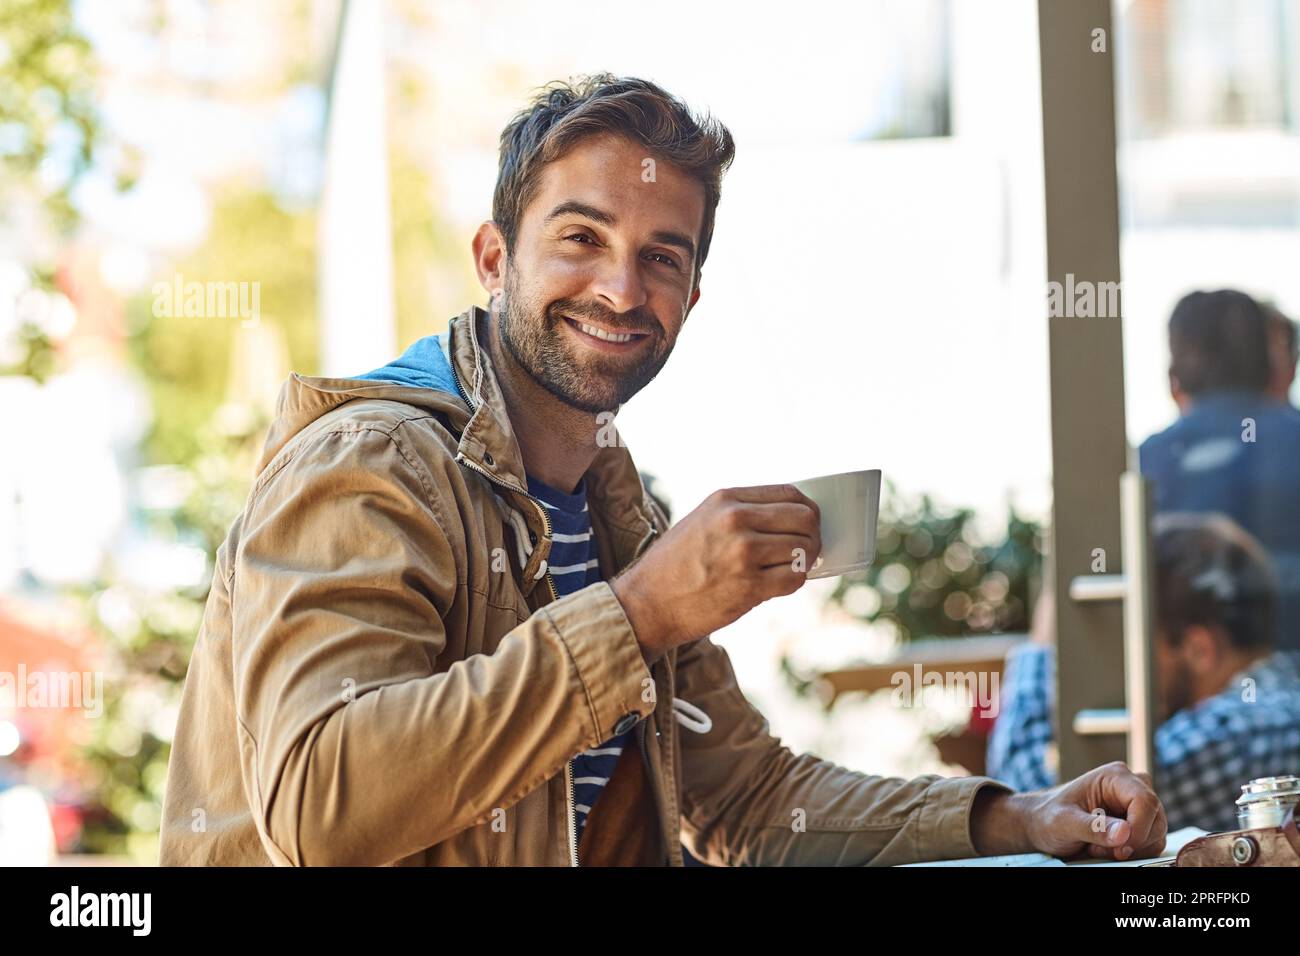 Die heutigen Abenteuer werden stolz von Kaffee gesponsert. Porträt eines entspannten Touristen, der eine Tasse Kaffee in einem Straßencafé genießt. Stockfoto